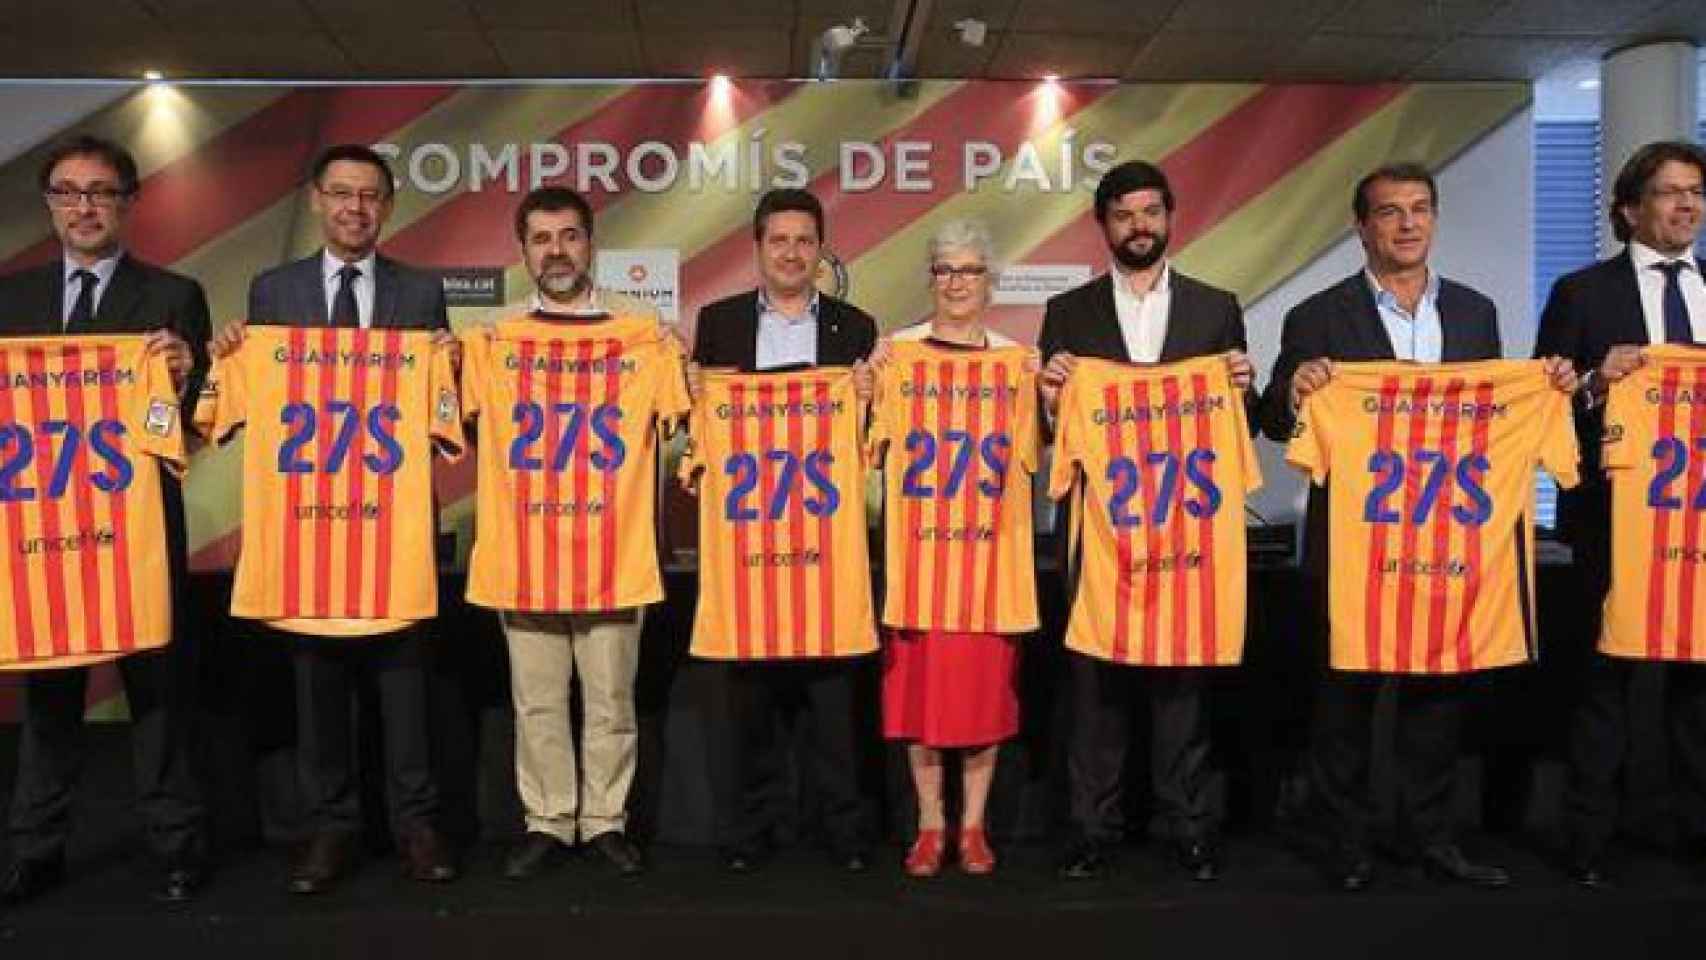 Xavier Vinyals, en el centro, rodeado por Jord Sánchez (ANC), Muriel Casals (Òmnium) y los cuatro candidatos a la presidencia del FC Barcelona, en julio de 2015.